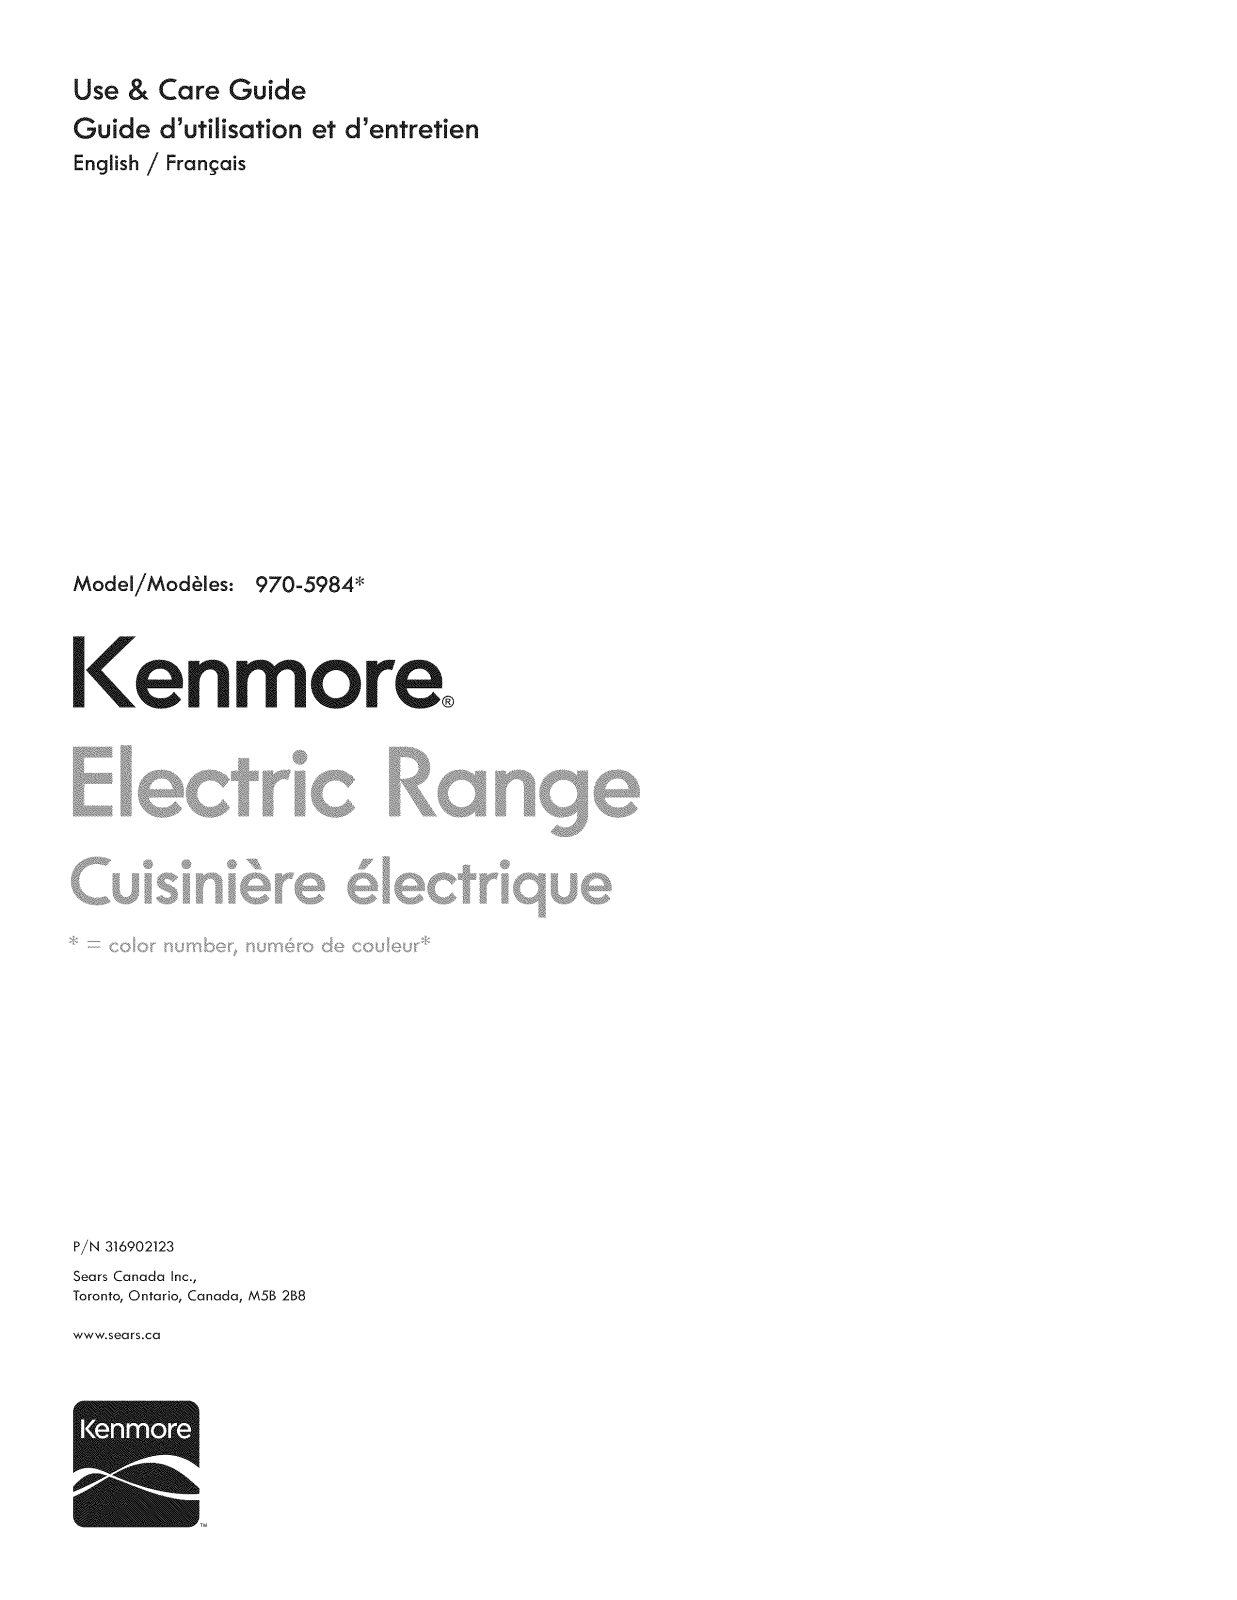 Kenmore 970598421, 970598434 Owner’s Manual